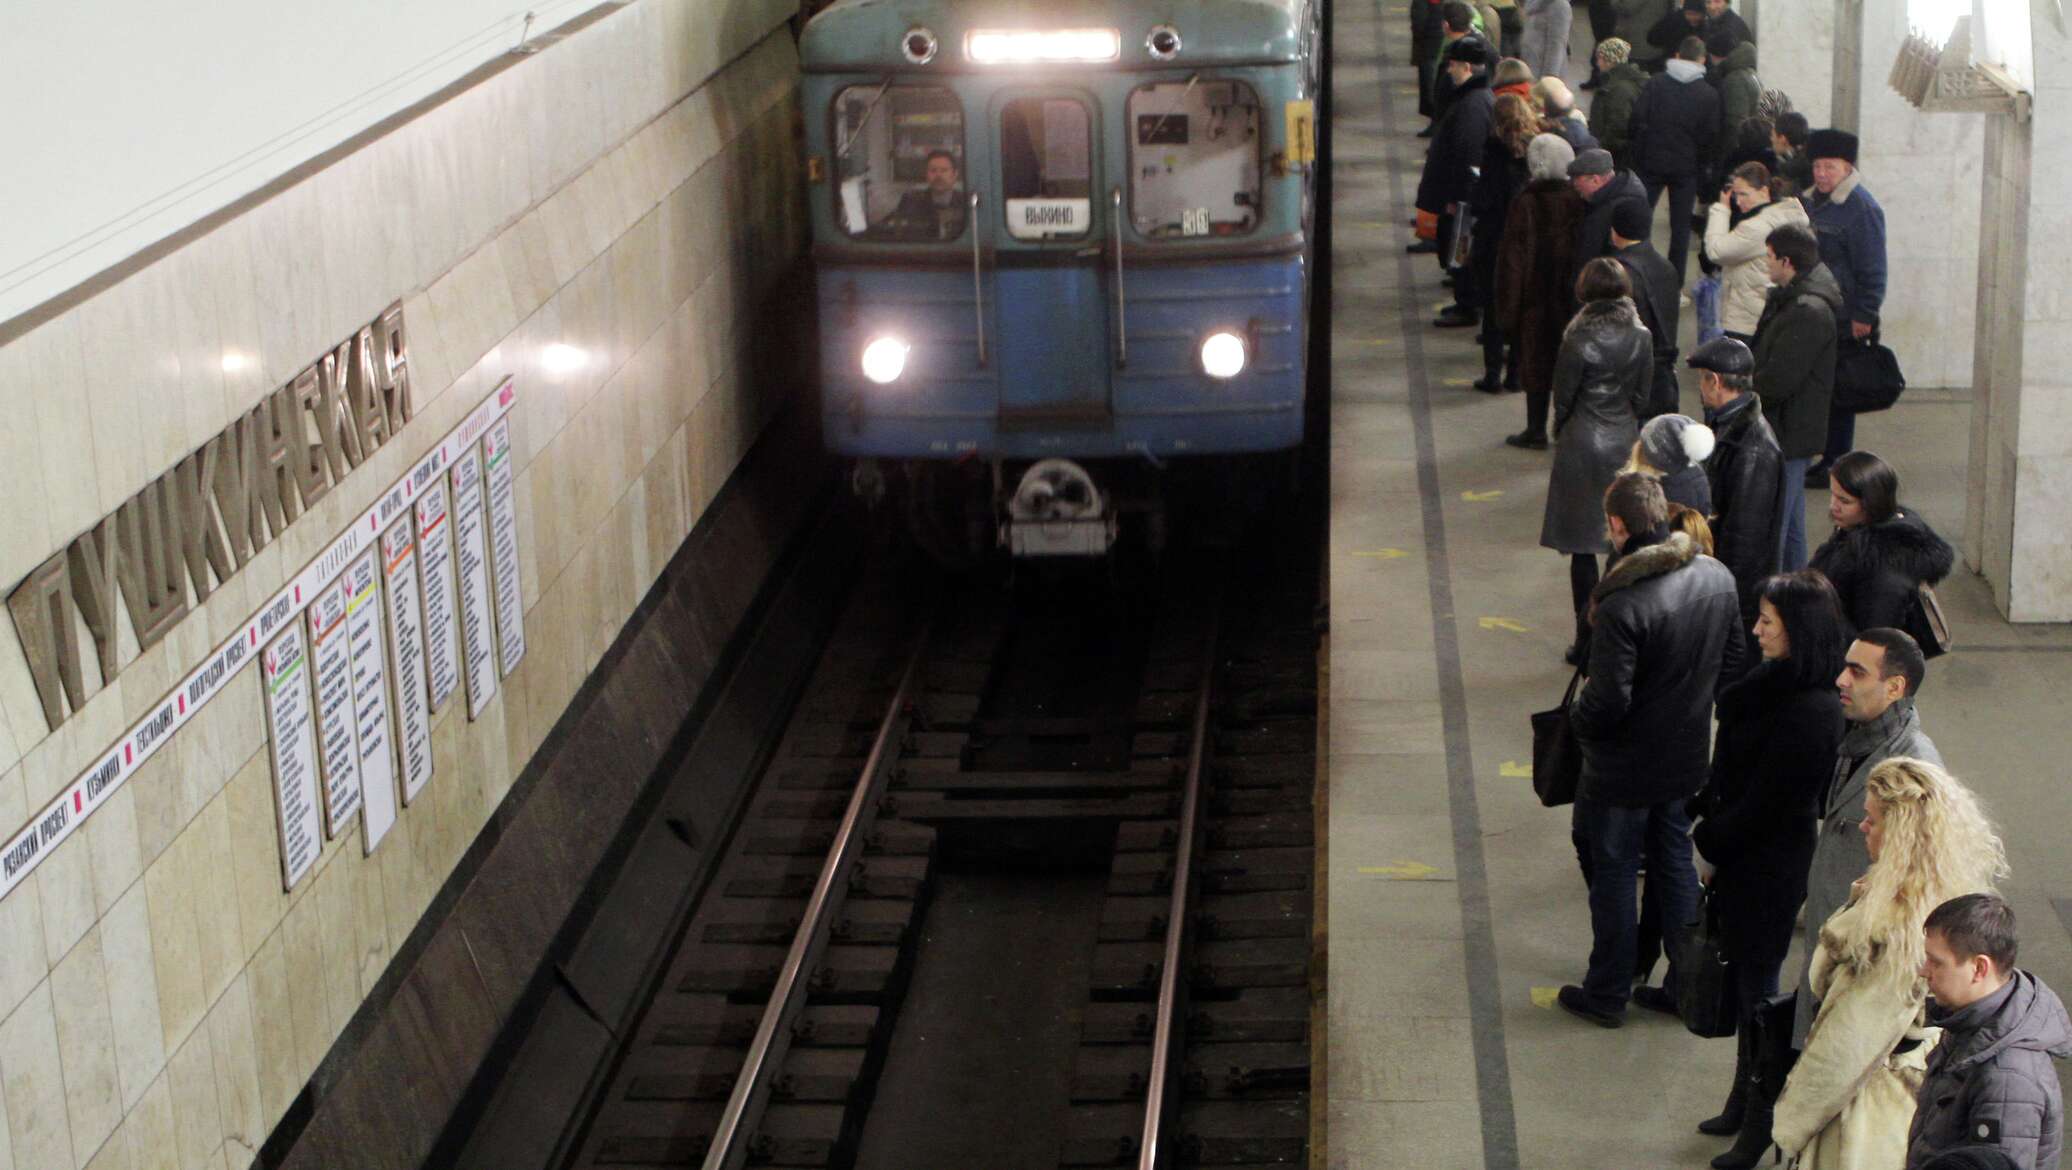 платформа в метро